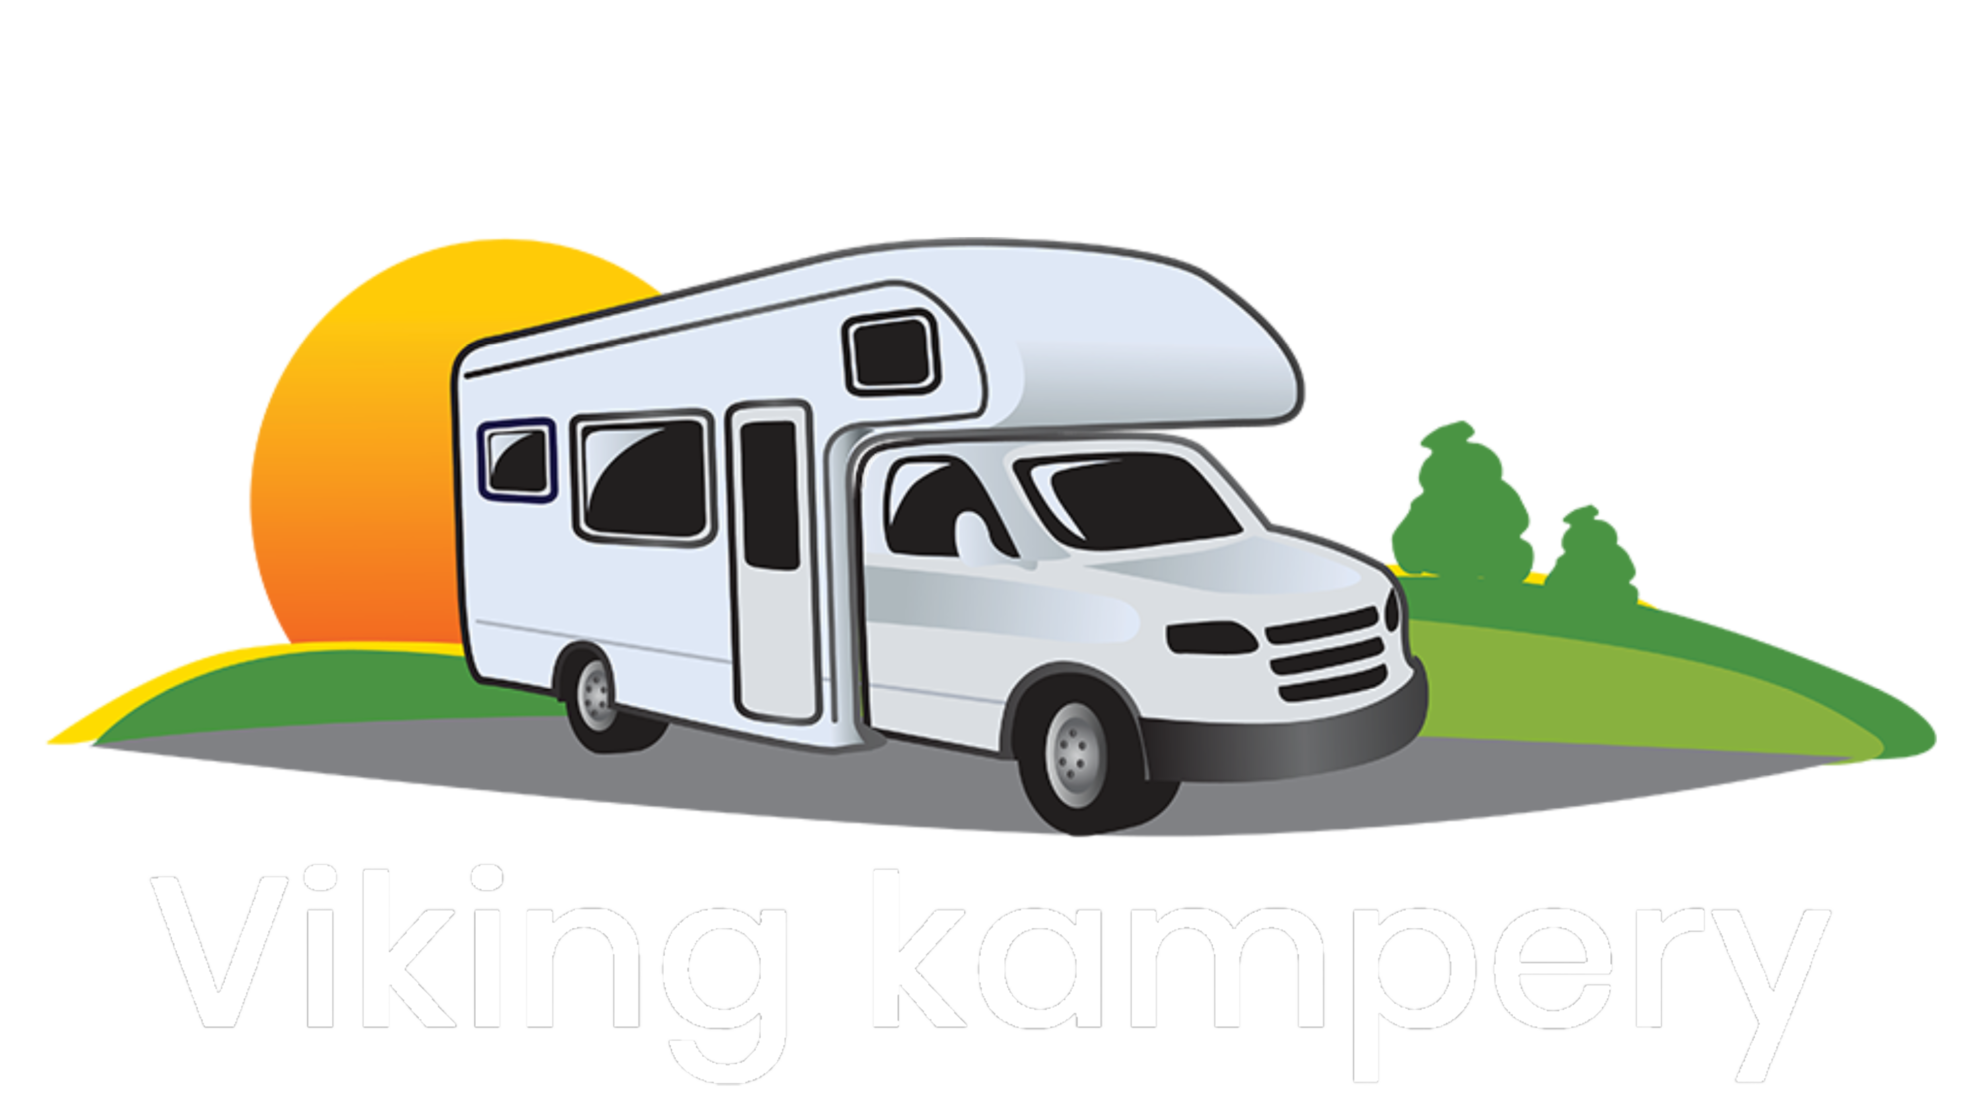 Viking kampery - logo